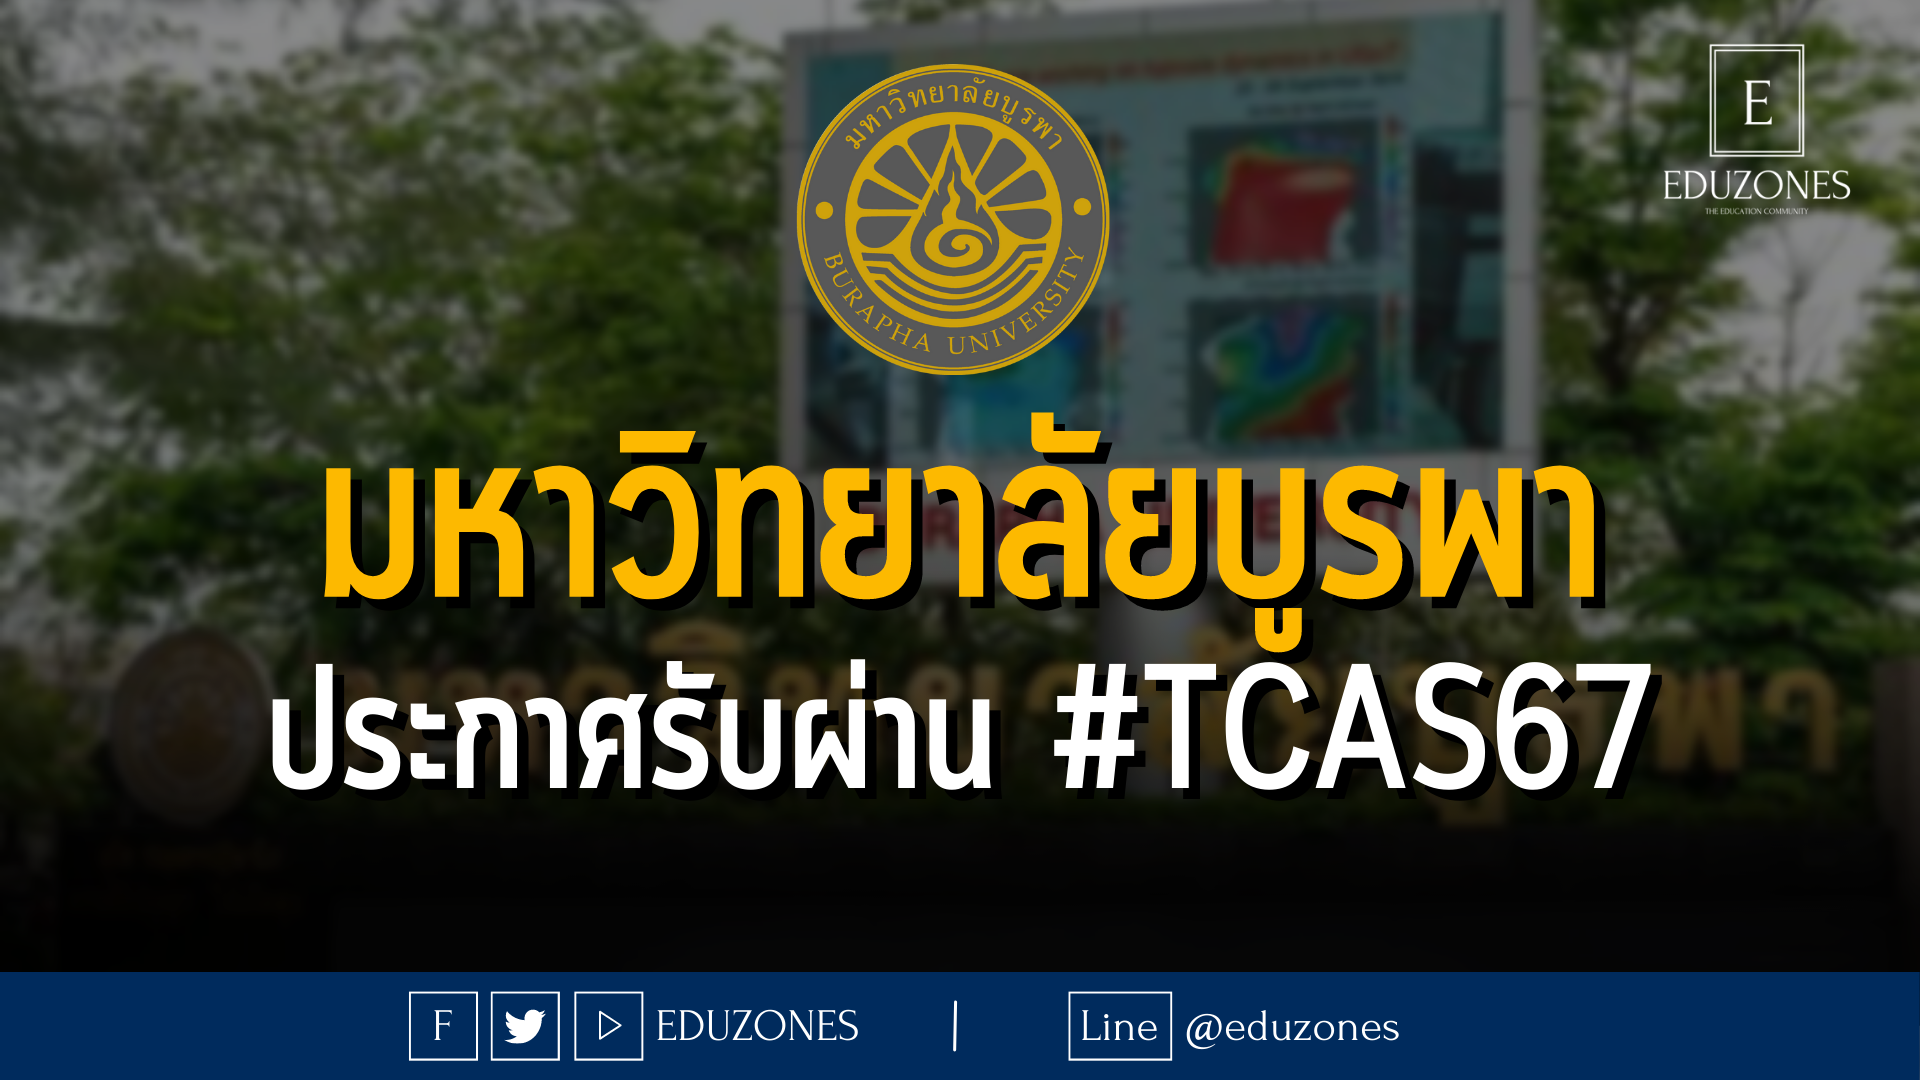 มหาวิทยาลัยบูรพา ประกาศรับผ่าน #TCAS67